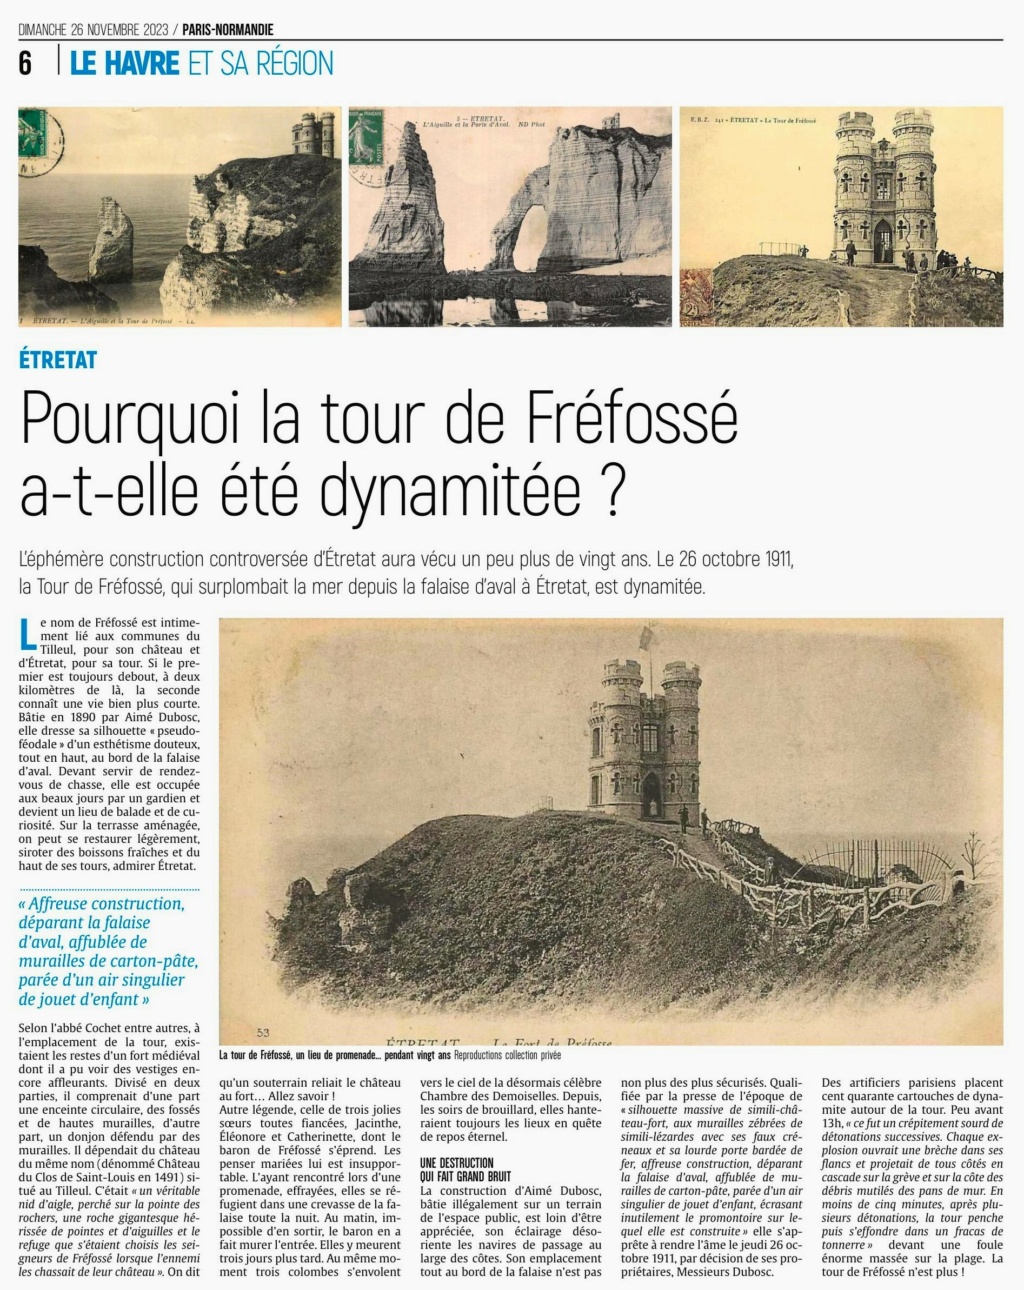 Etretat - Pourquoi la tour de Fréfossé a-t-elle été dynamitée ? 2023-147